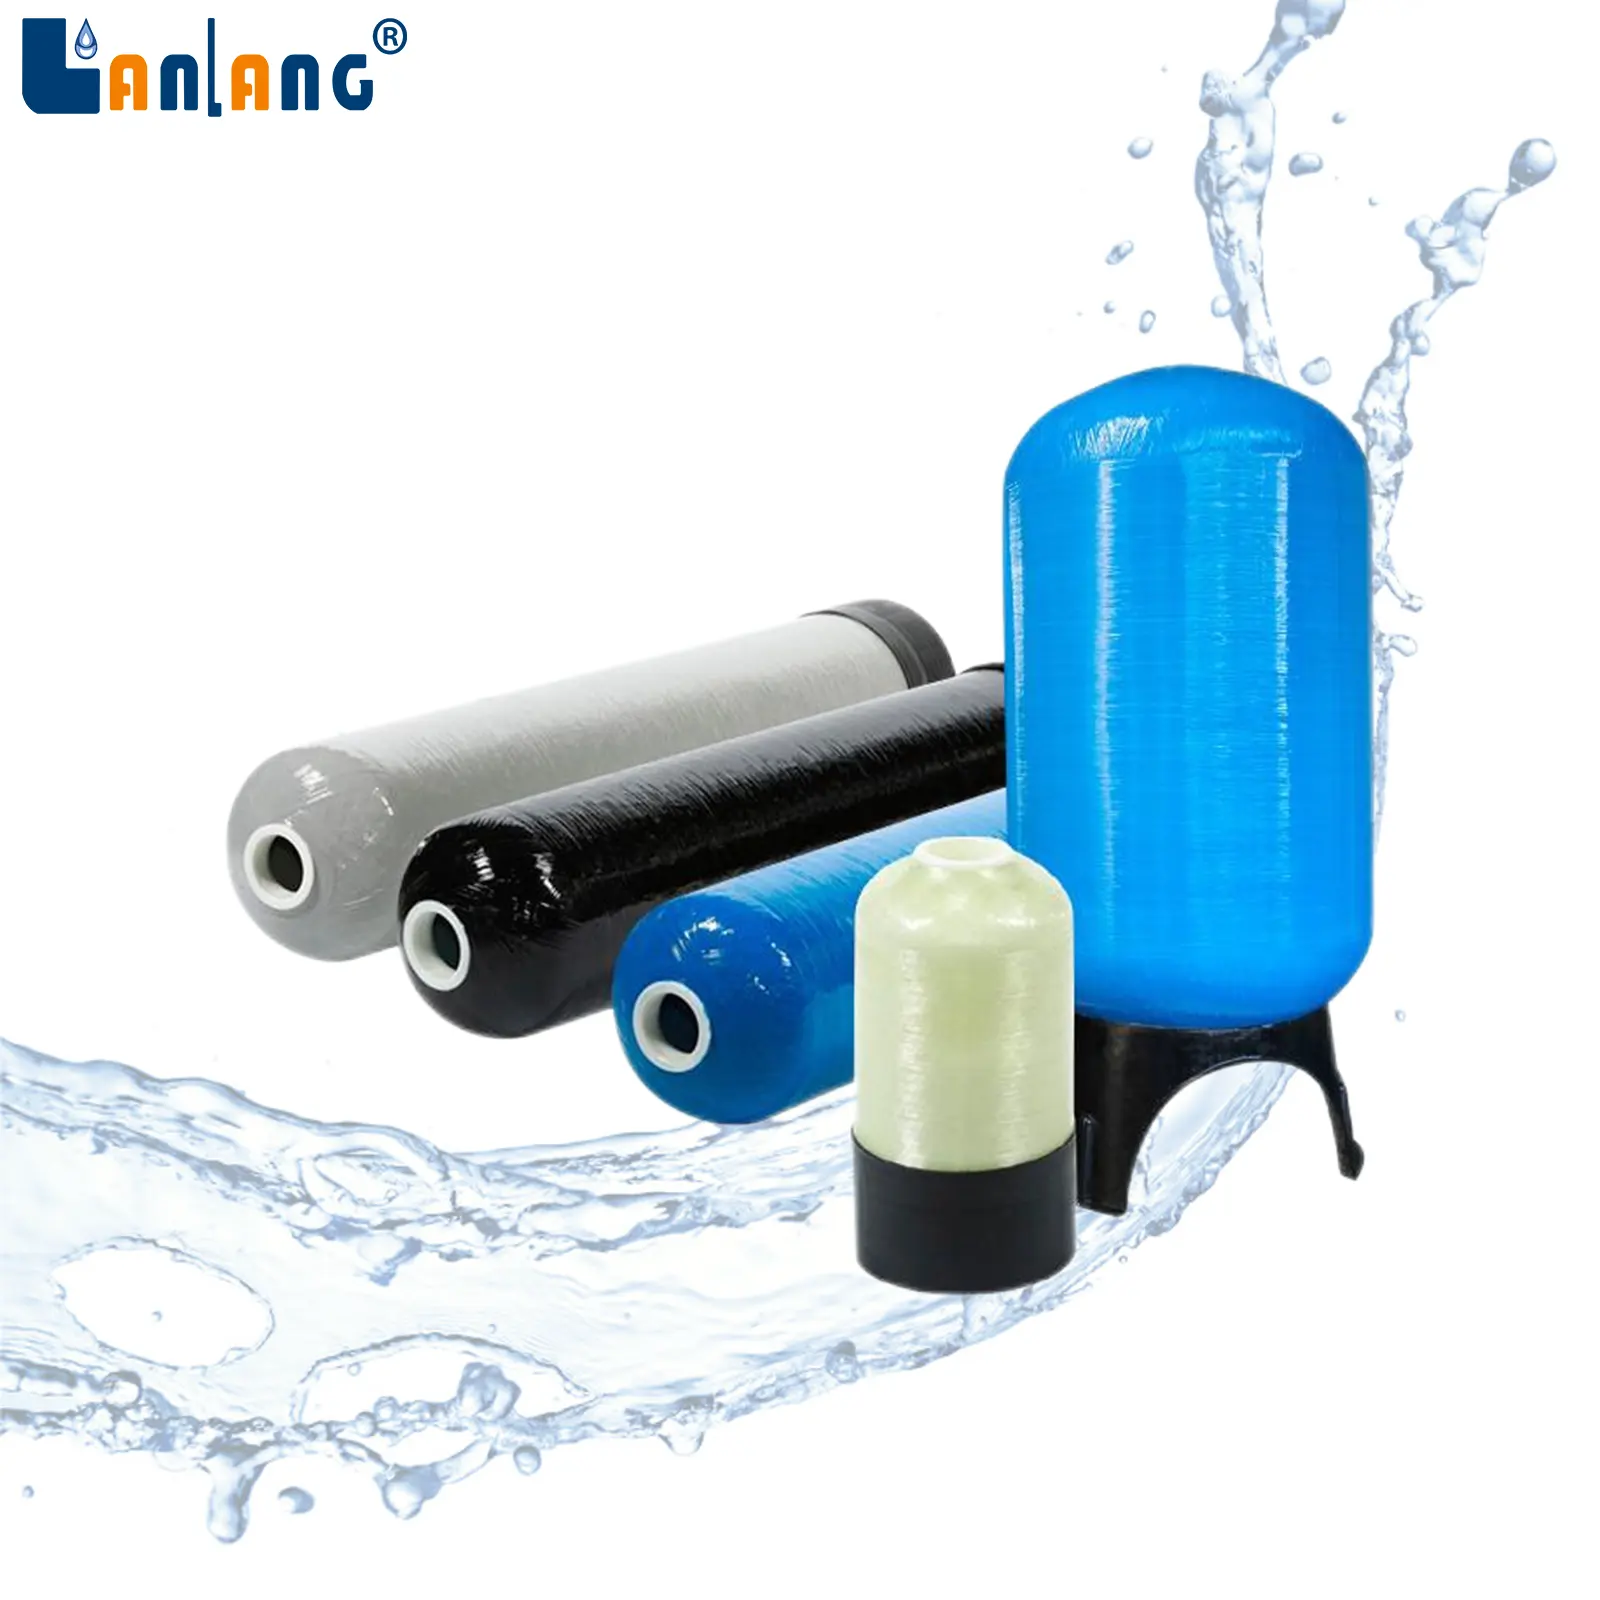 Fiberglas takviyeli plastik Tank su arıtma makineleri reçine varil filtre su yumuşatıcı  frp basınçlı kap